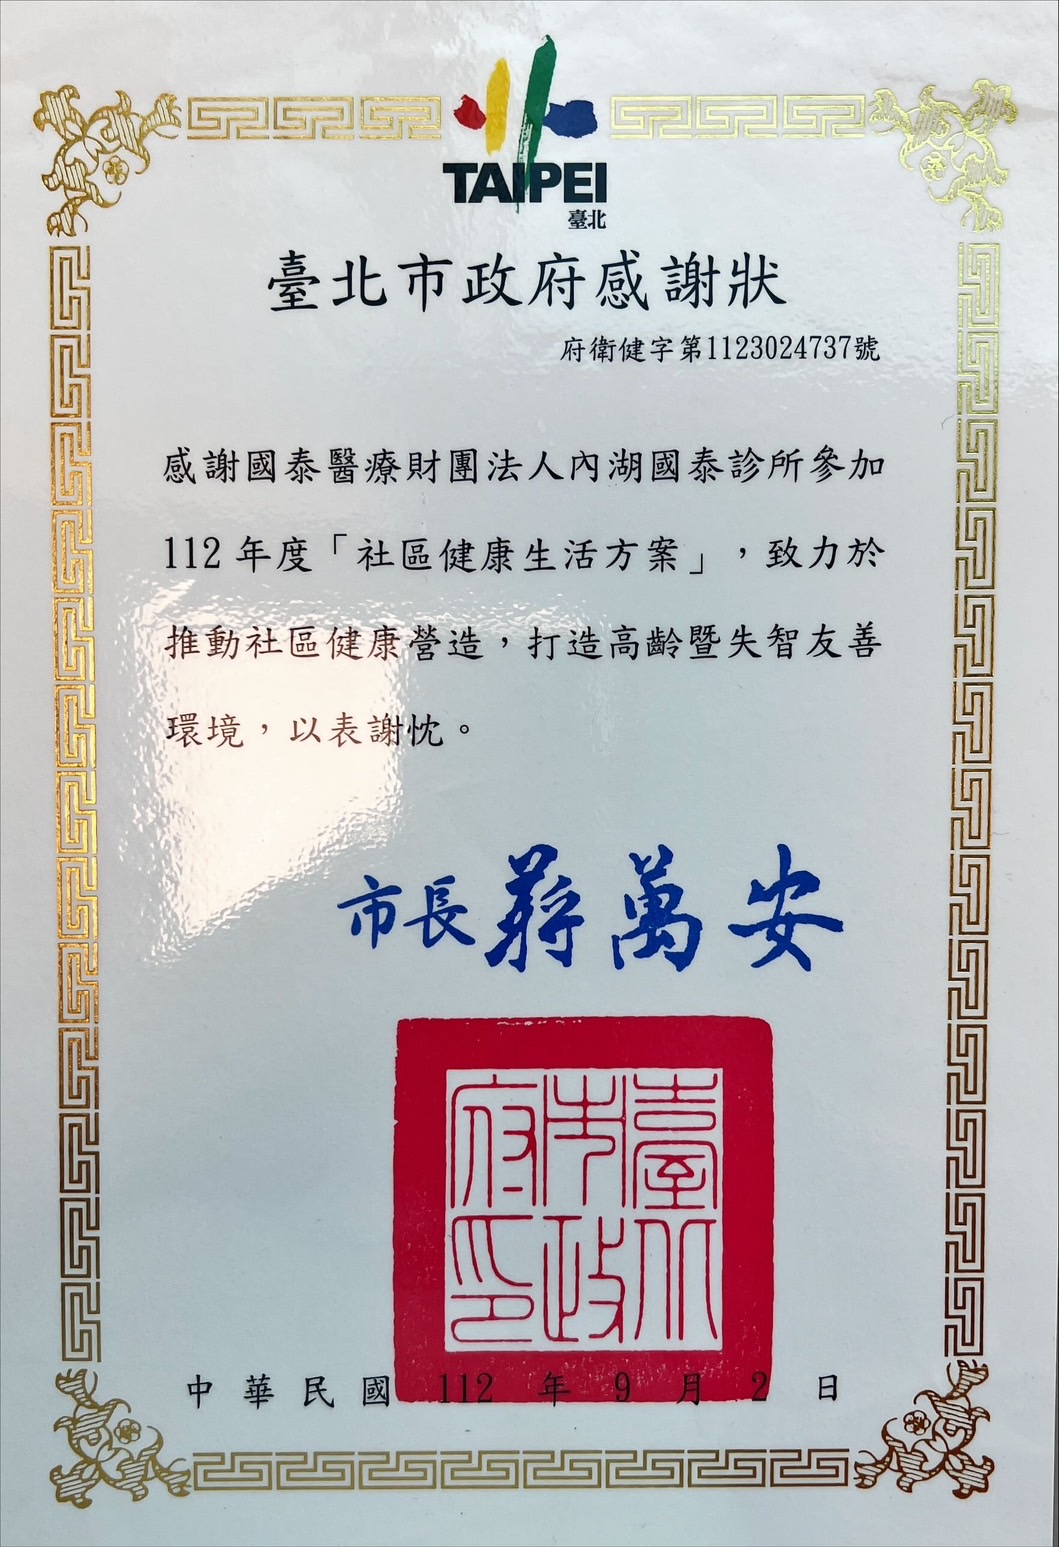 診所參加台北市衛生局112年度「社區健康生活方案」，獲頒感謝狀